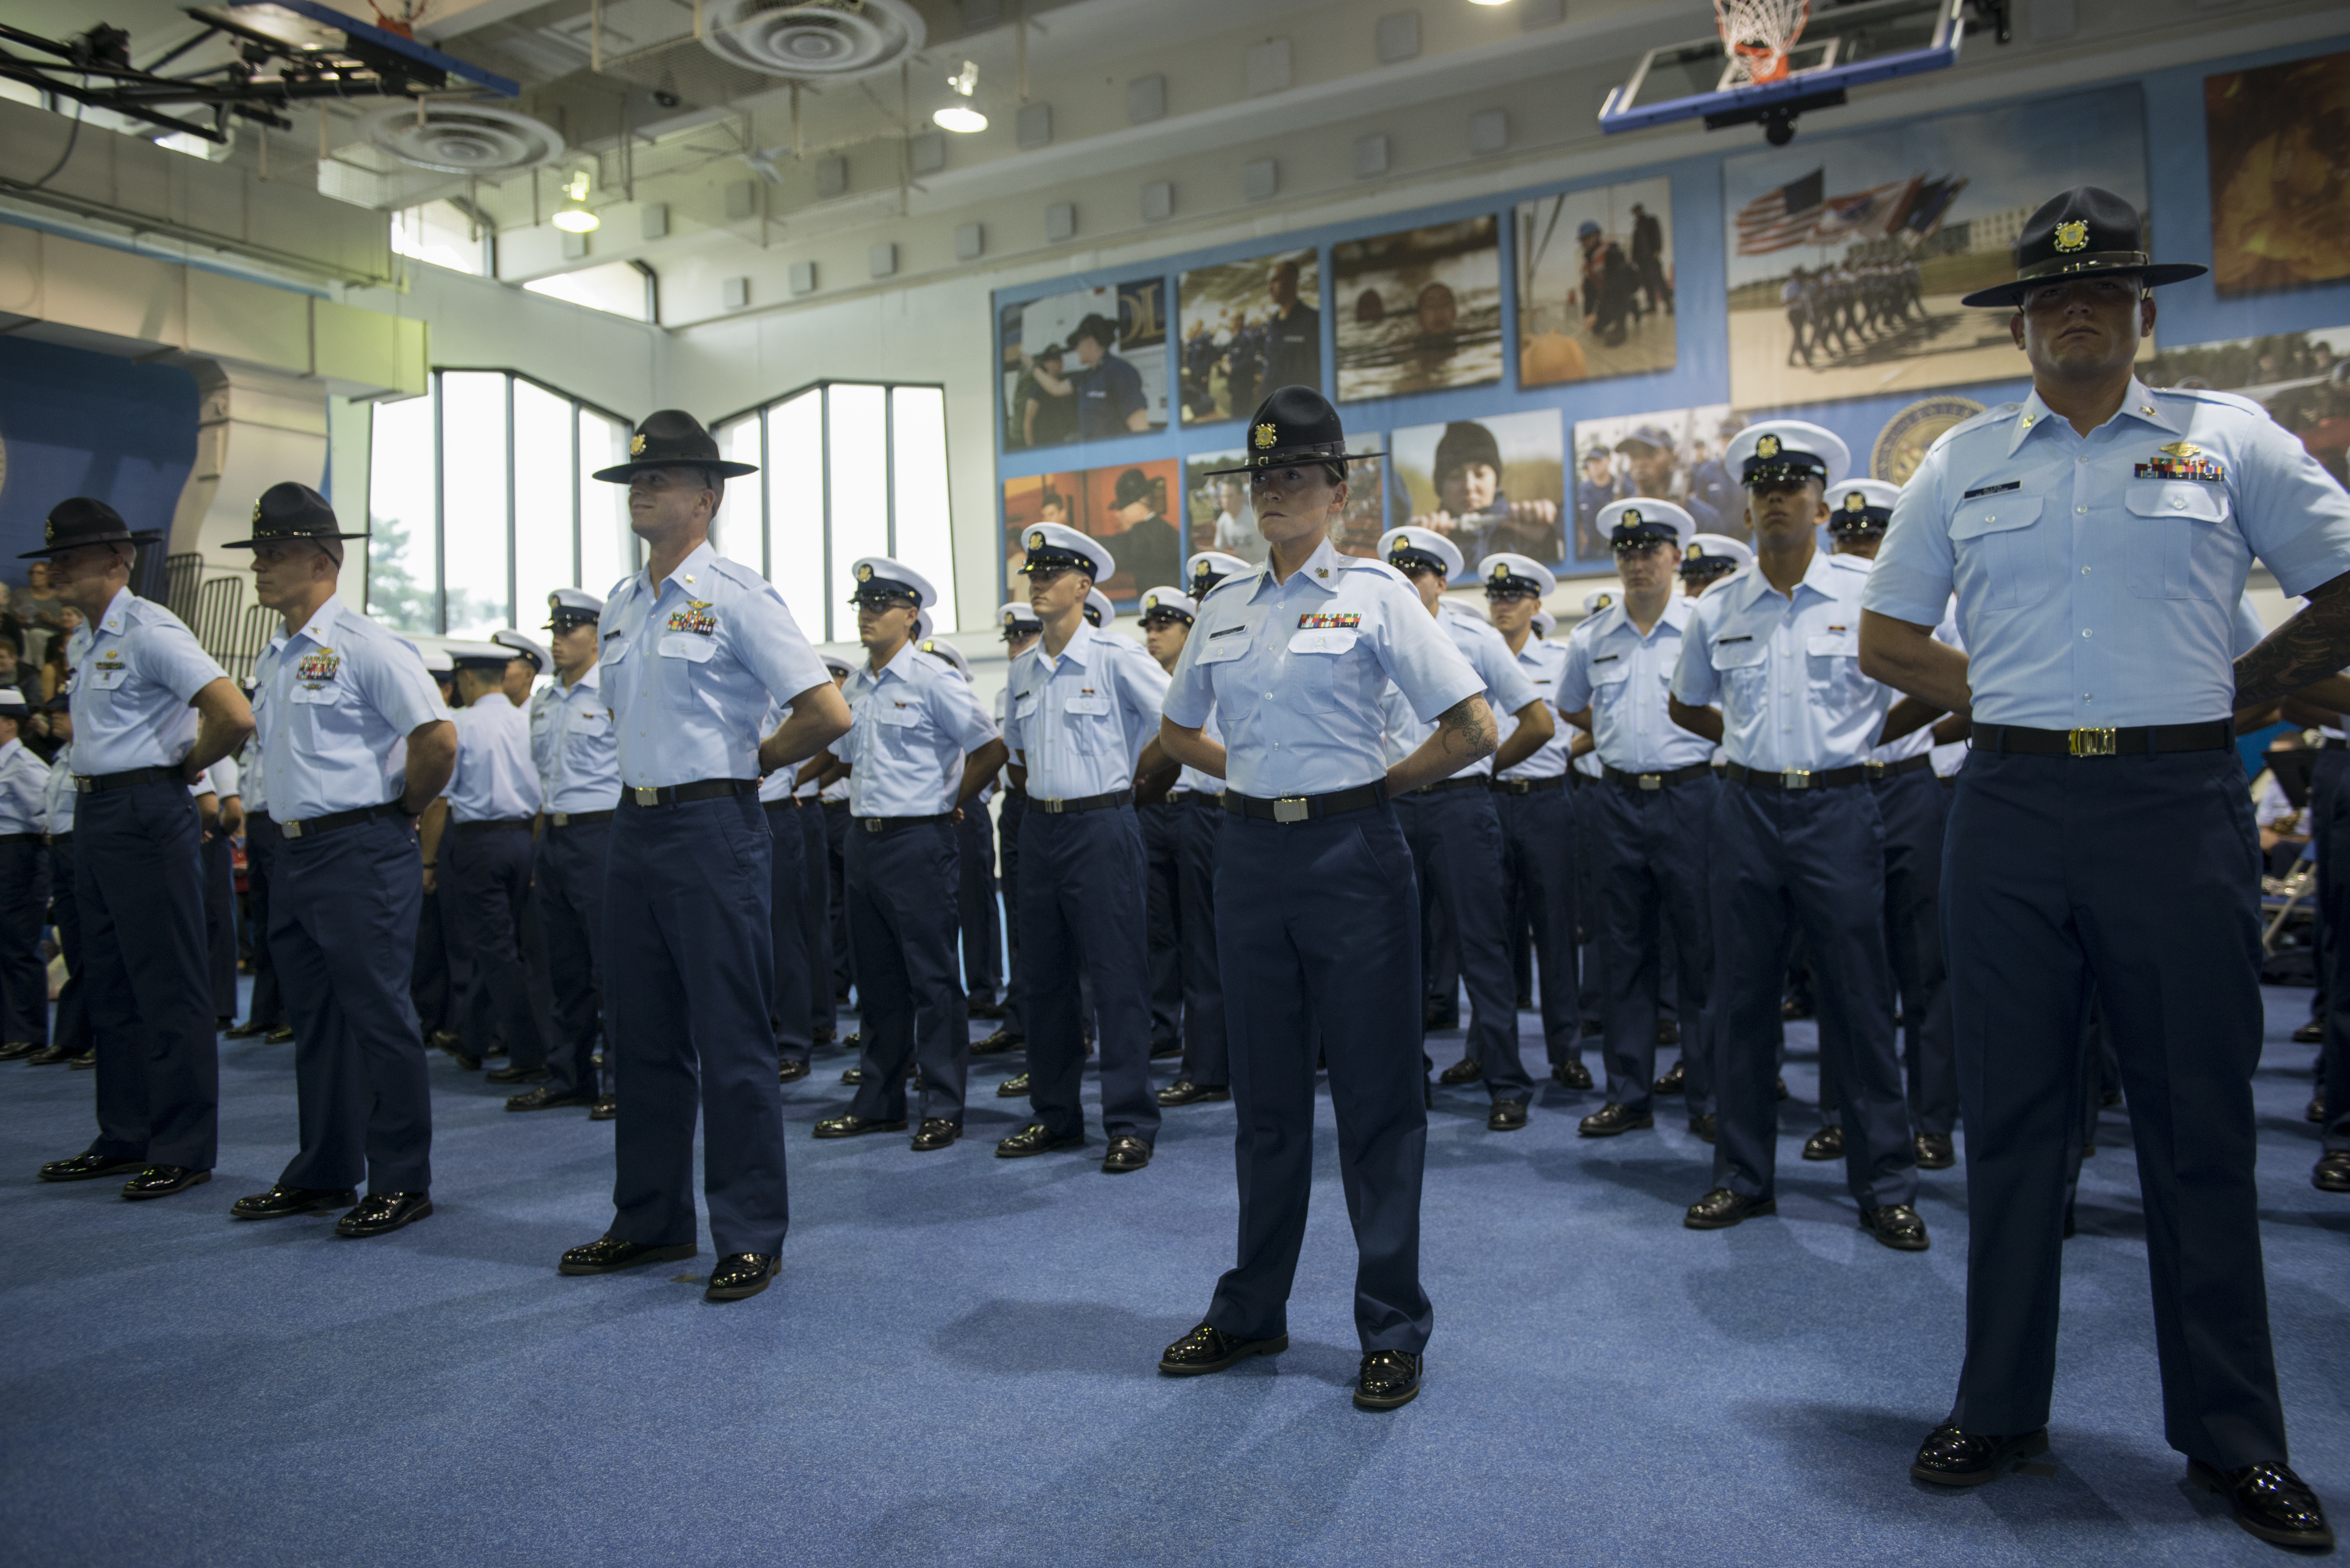 Coast guard training photo